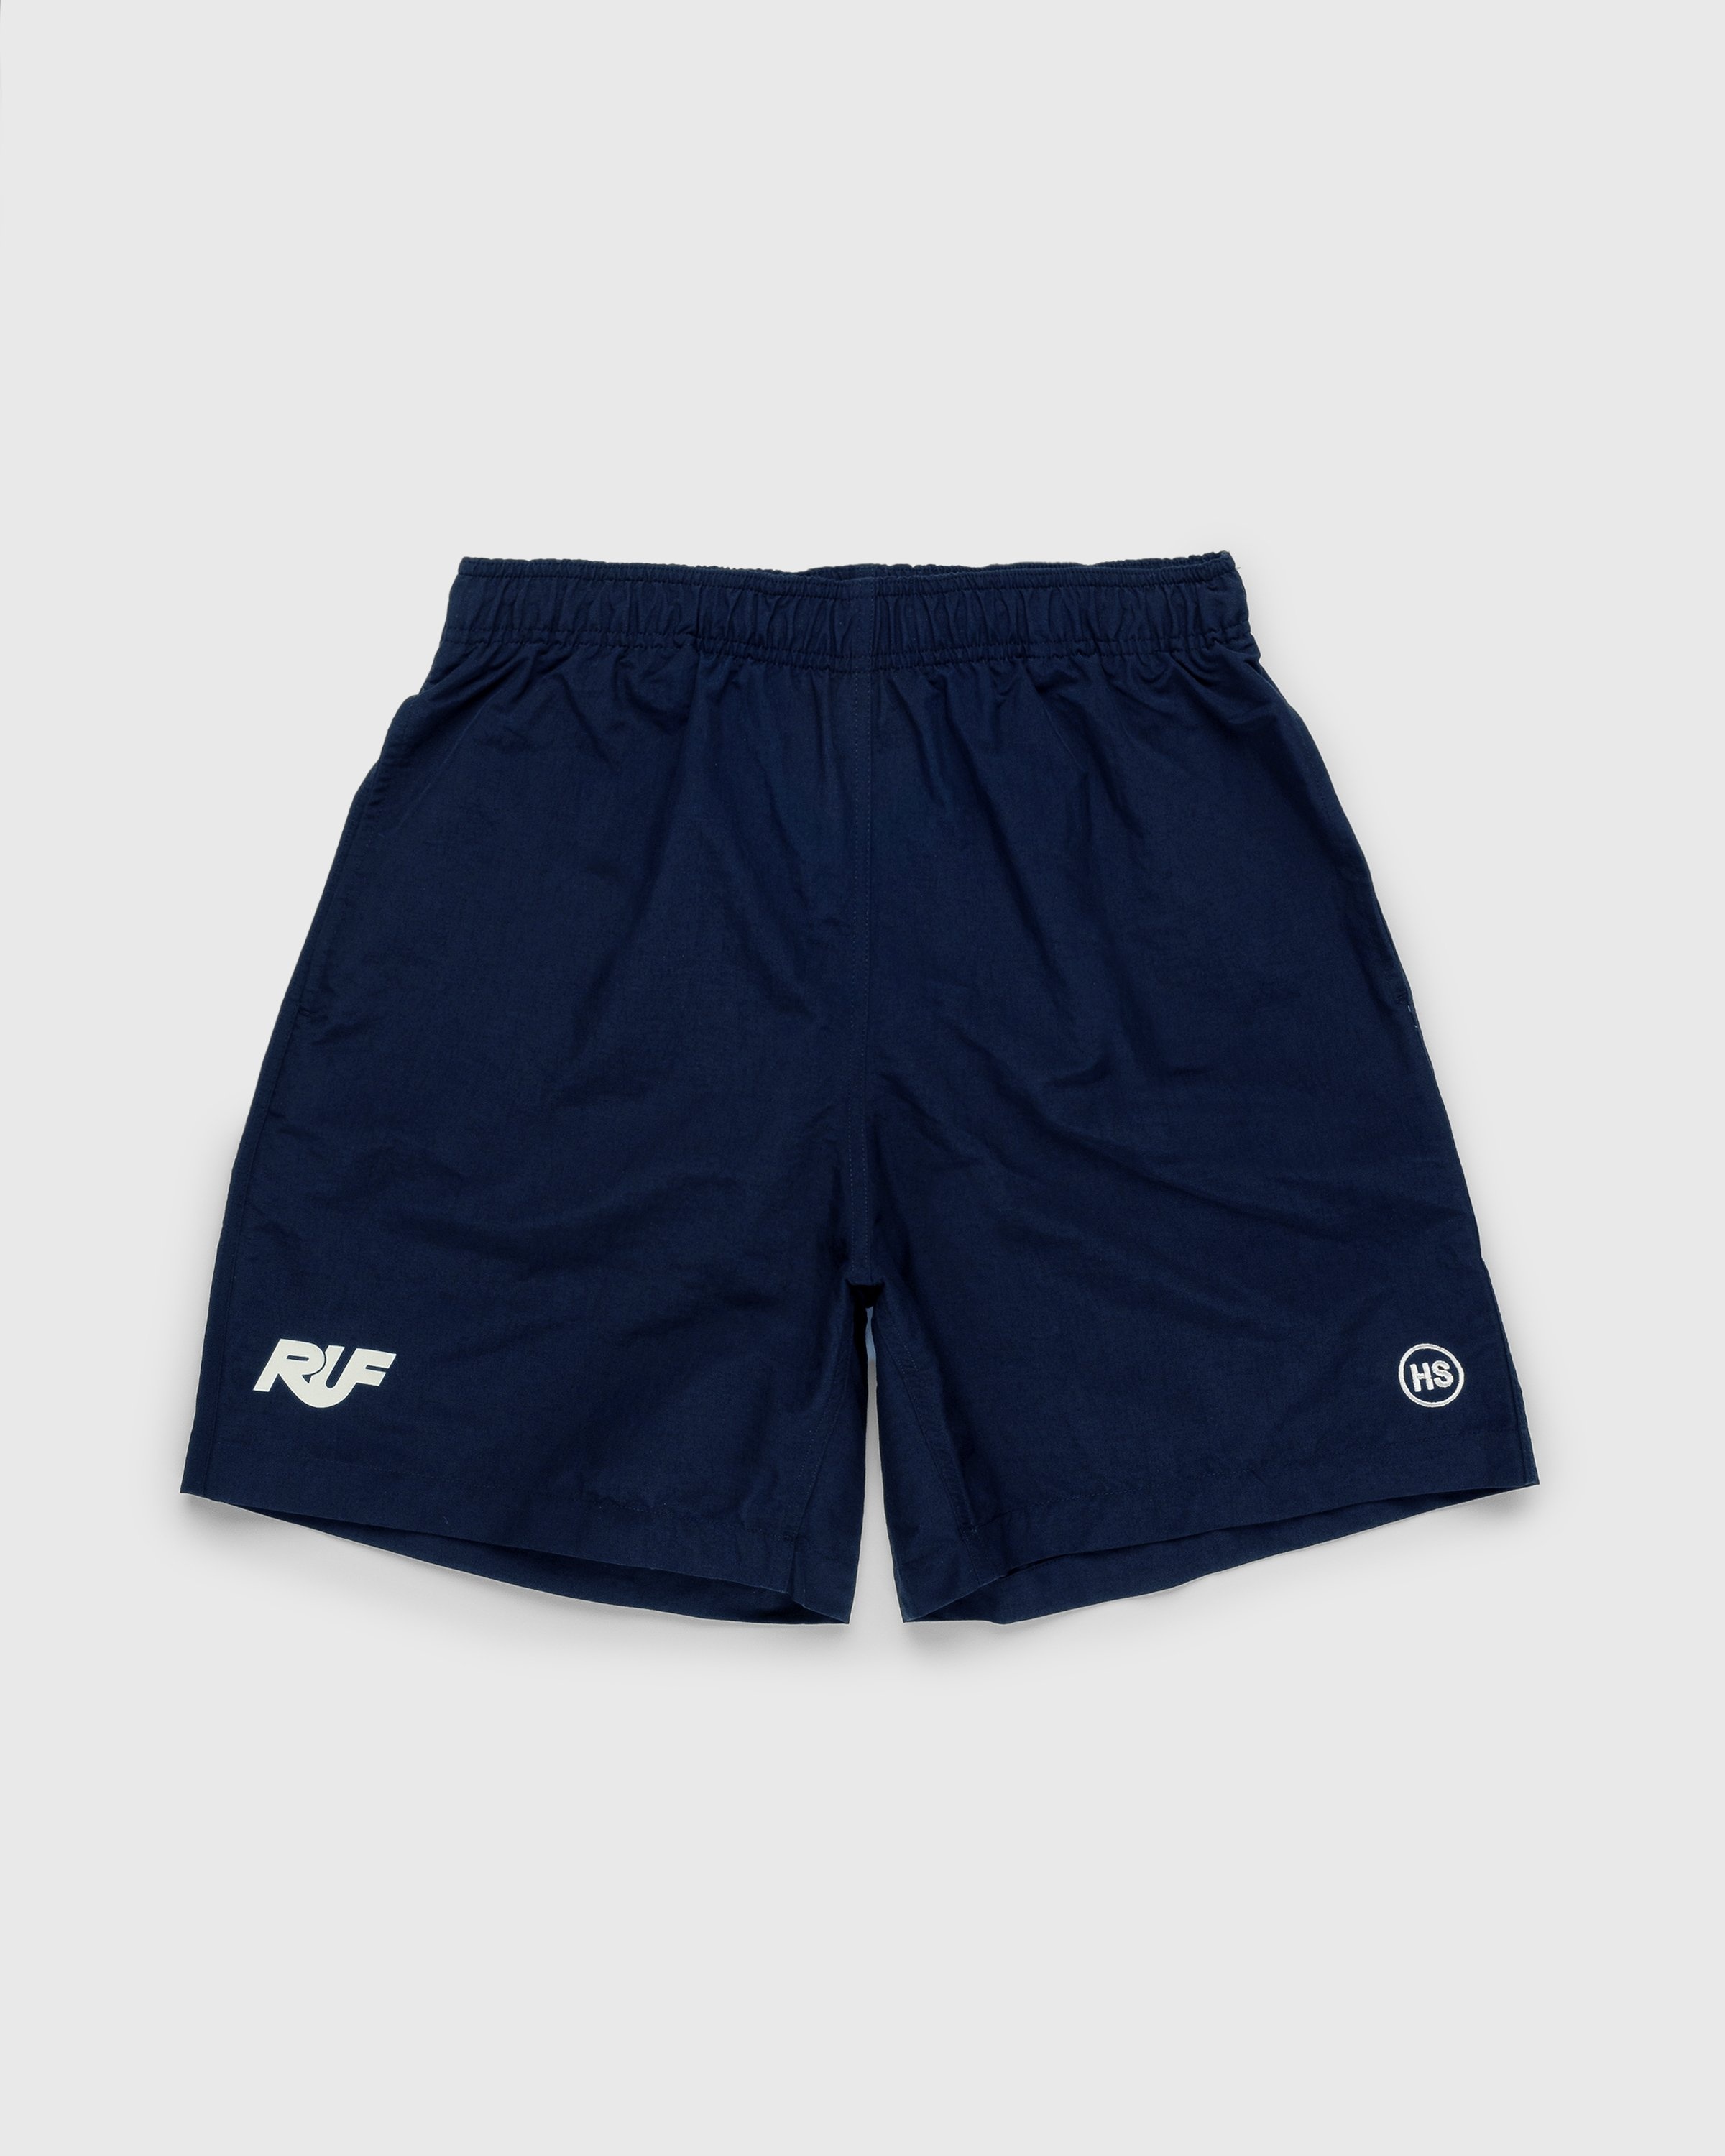 RUF x Highsnobiety – Water Shorts Navy - Swim Shorts - Blue - Image 1